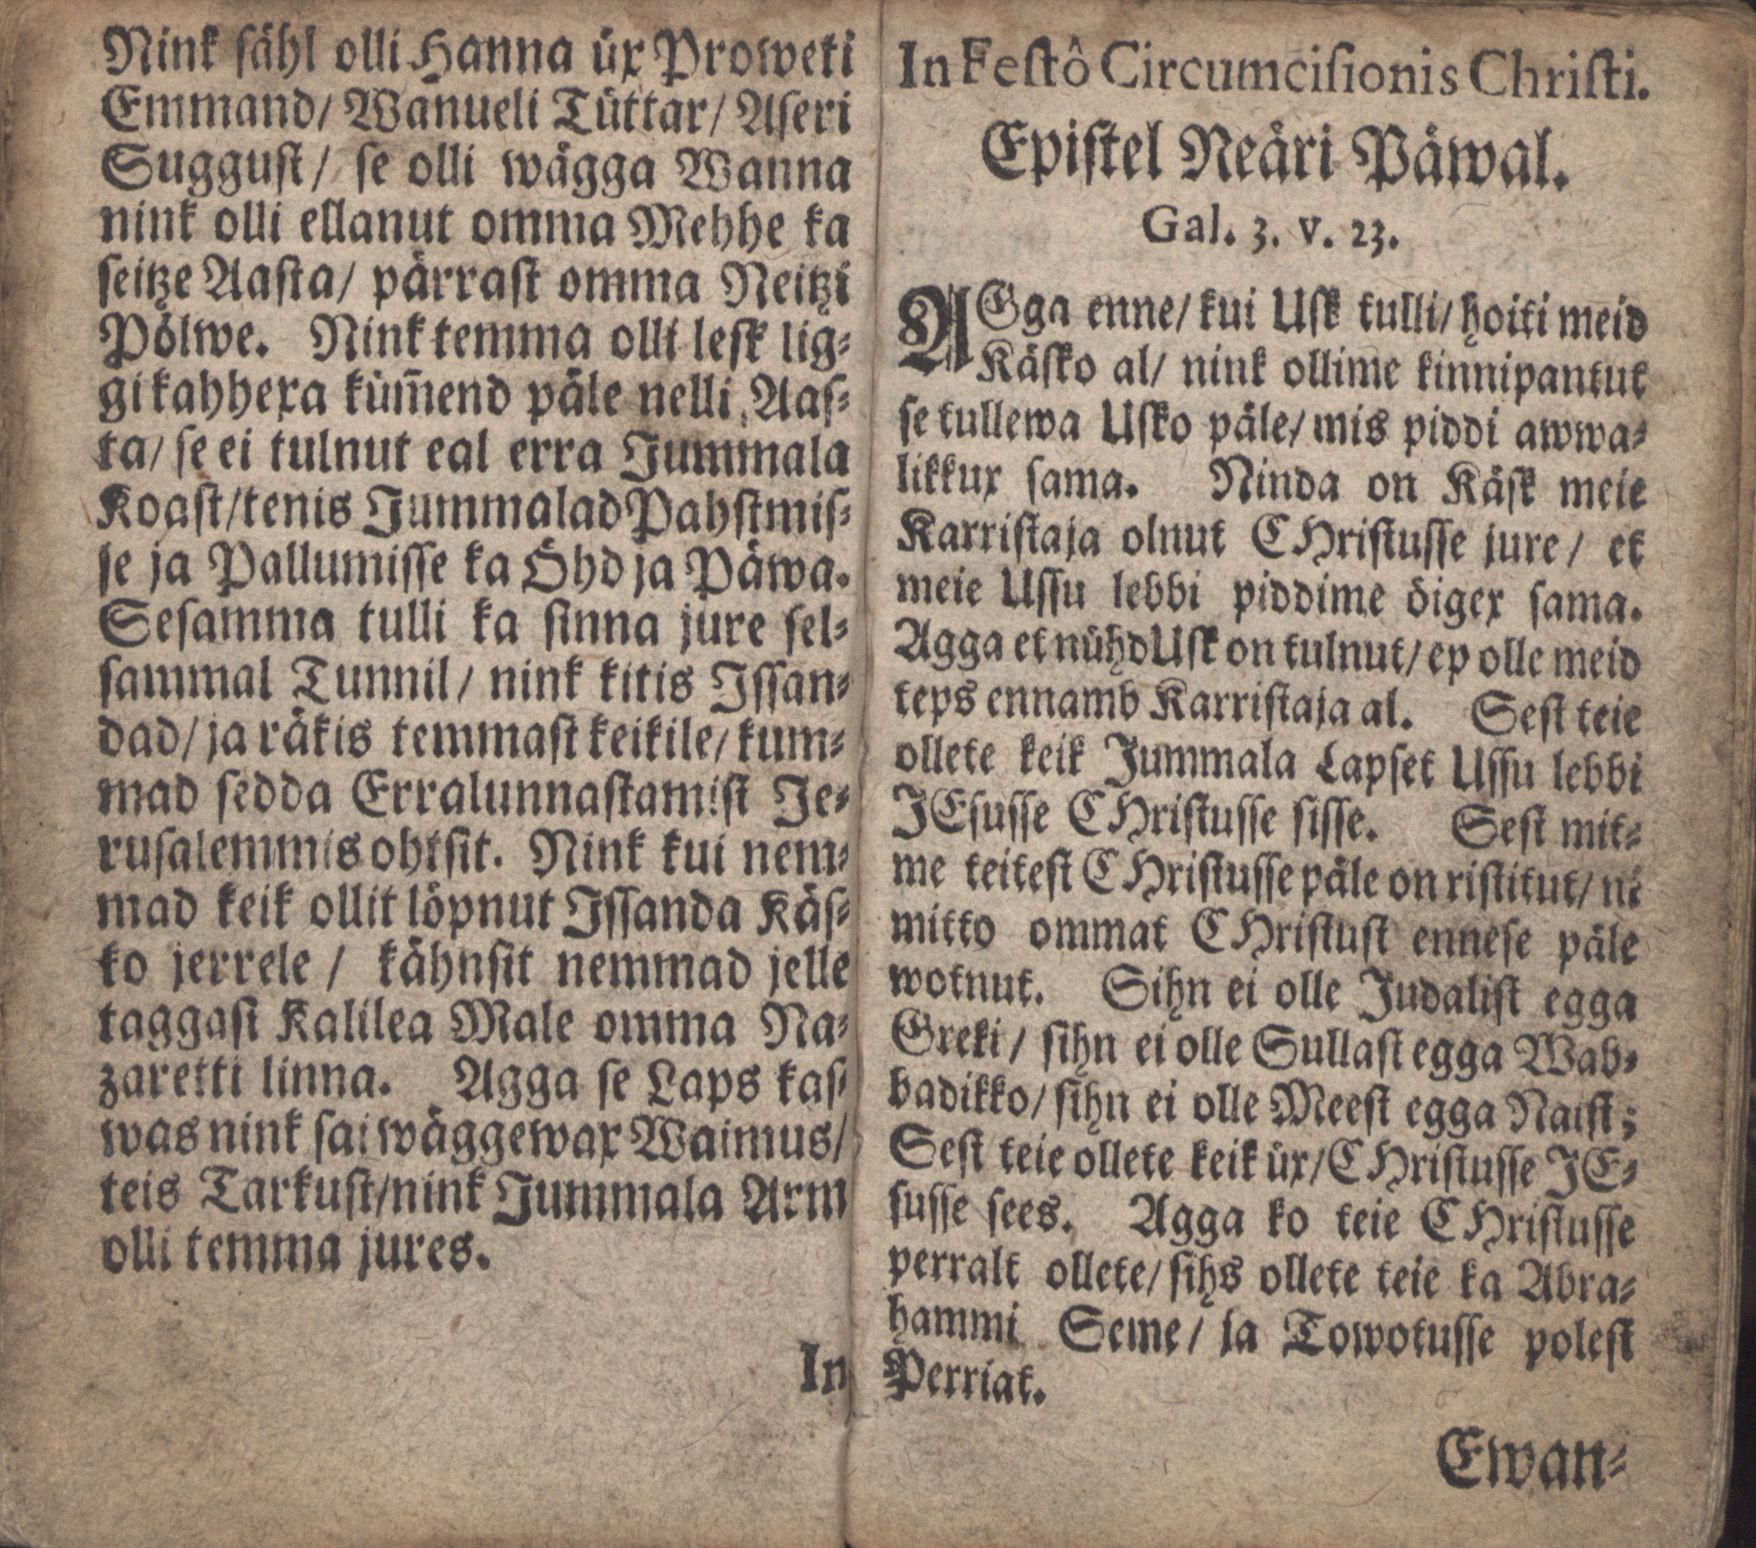 Ewangeliummit Nink Epistlit (1700) | 11. Haupttext